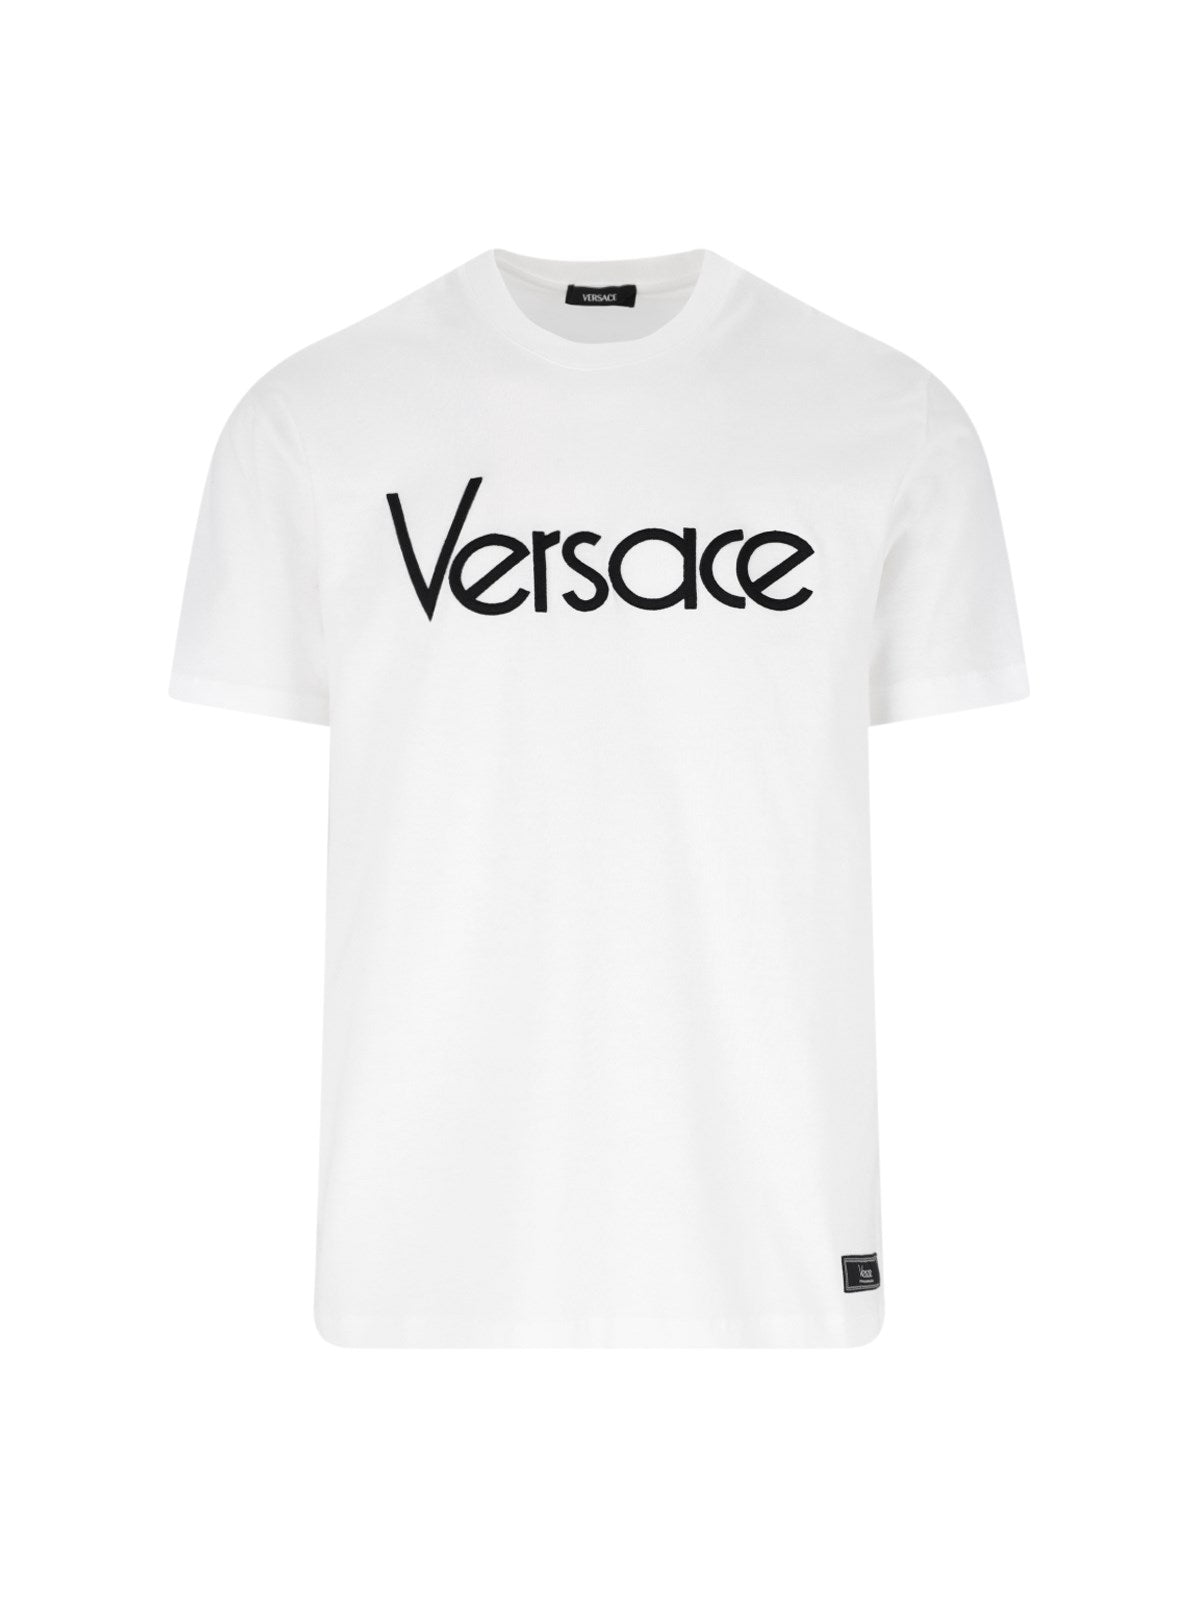 versace t-shirt logo-Versace- t-shirt Dresso